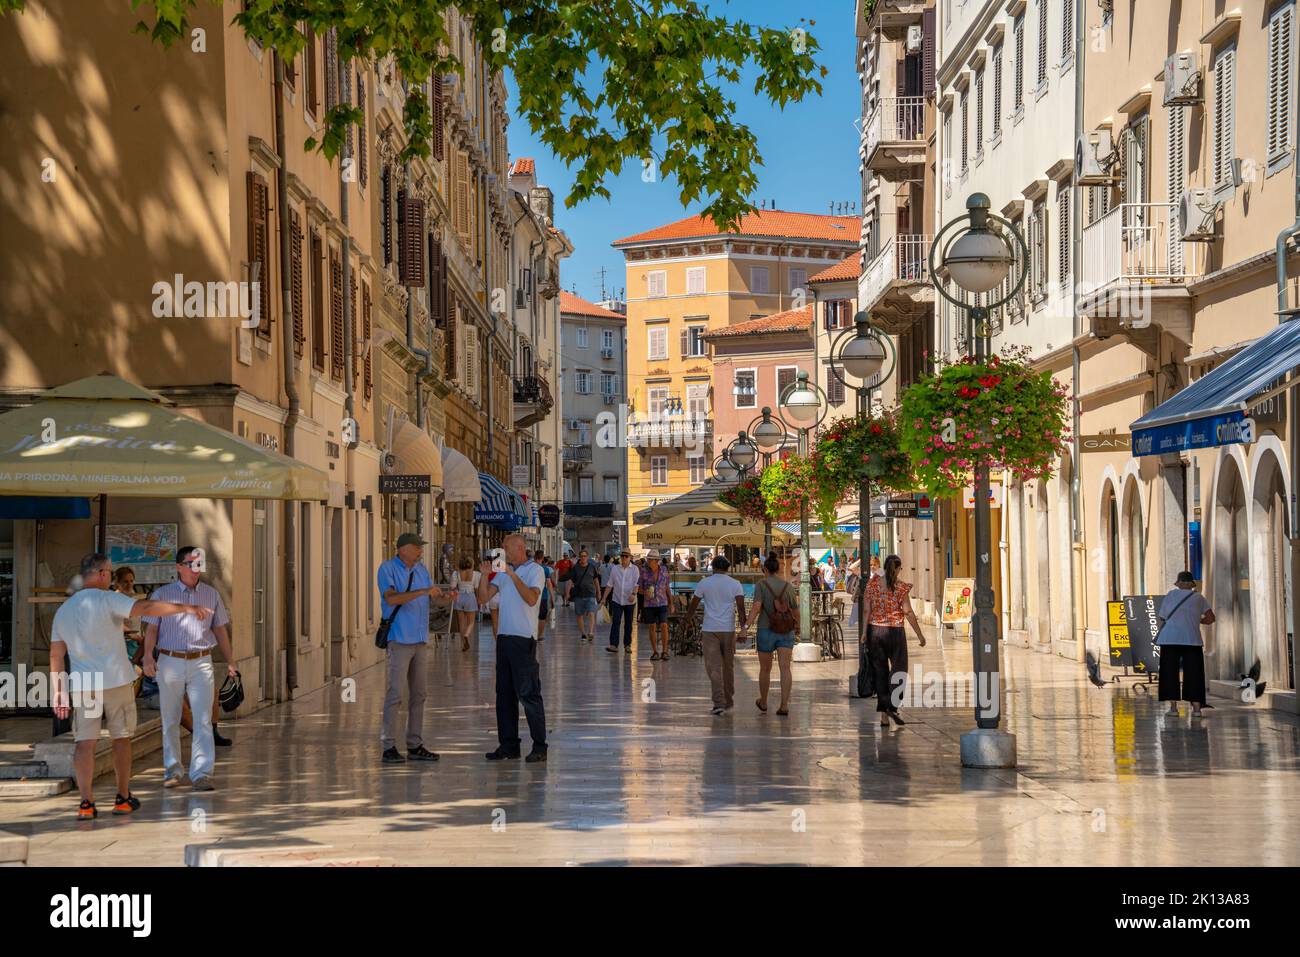 Blick auf Geschäfte, Menschen und kunstvolle Architektur auf Korzo, Rijeka, Kvarner Bucht, Kroatien, Europa Stockfoto